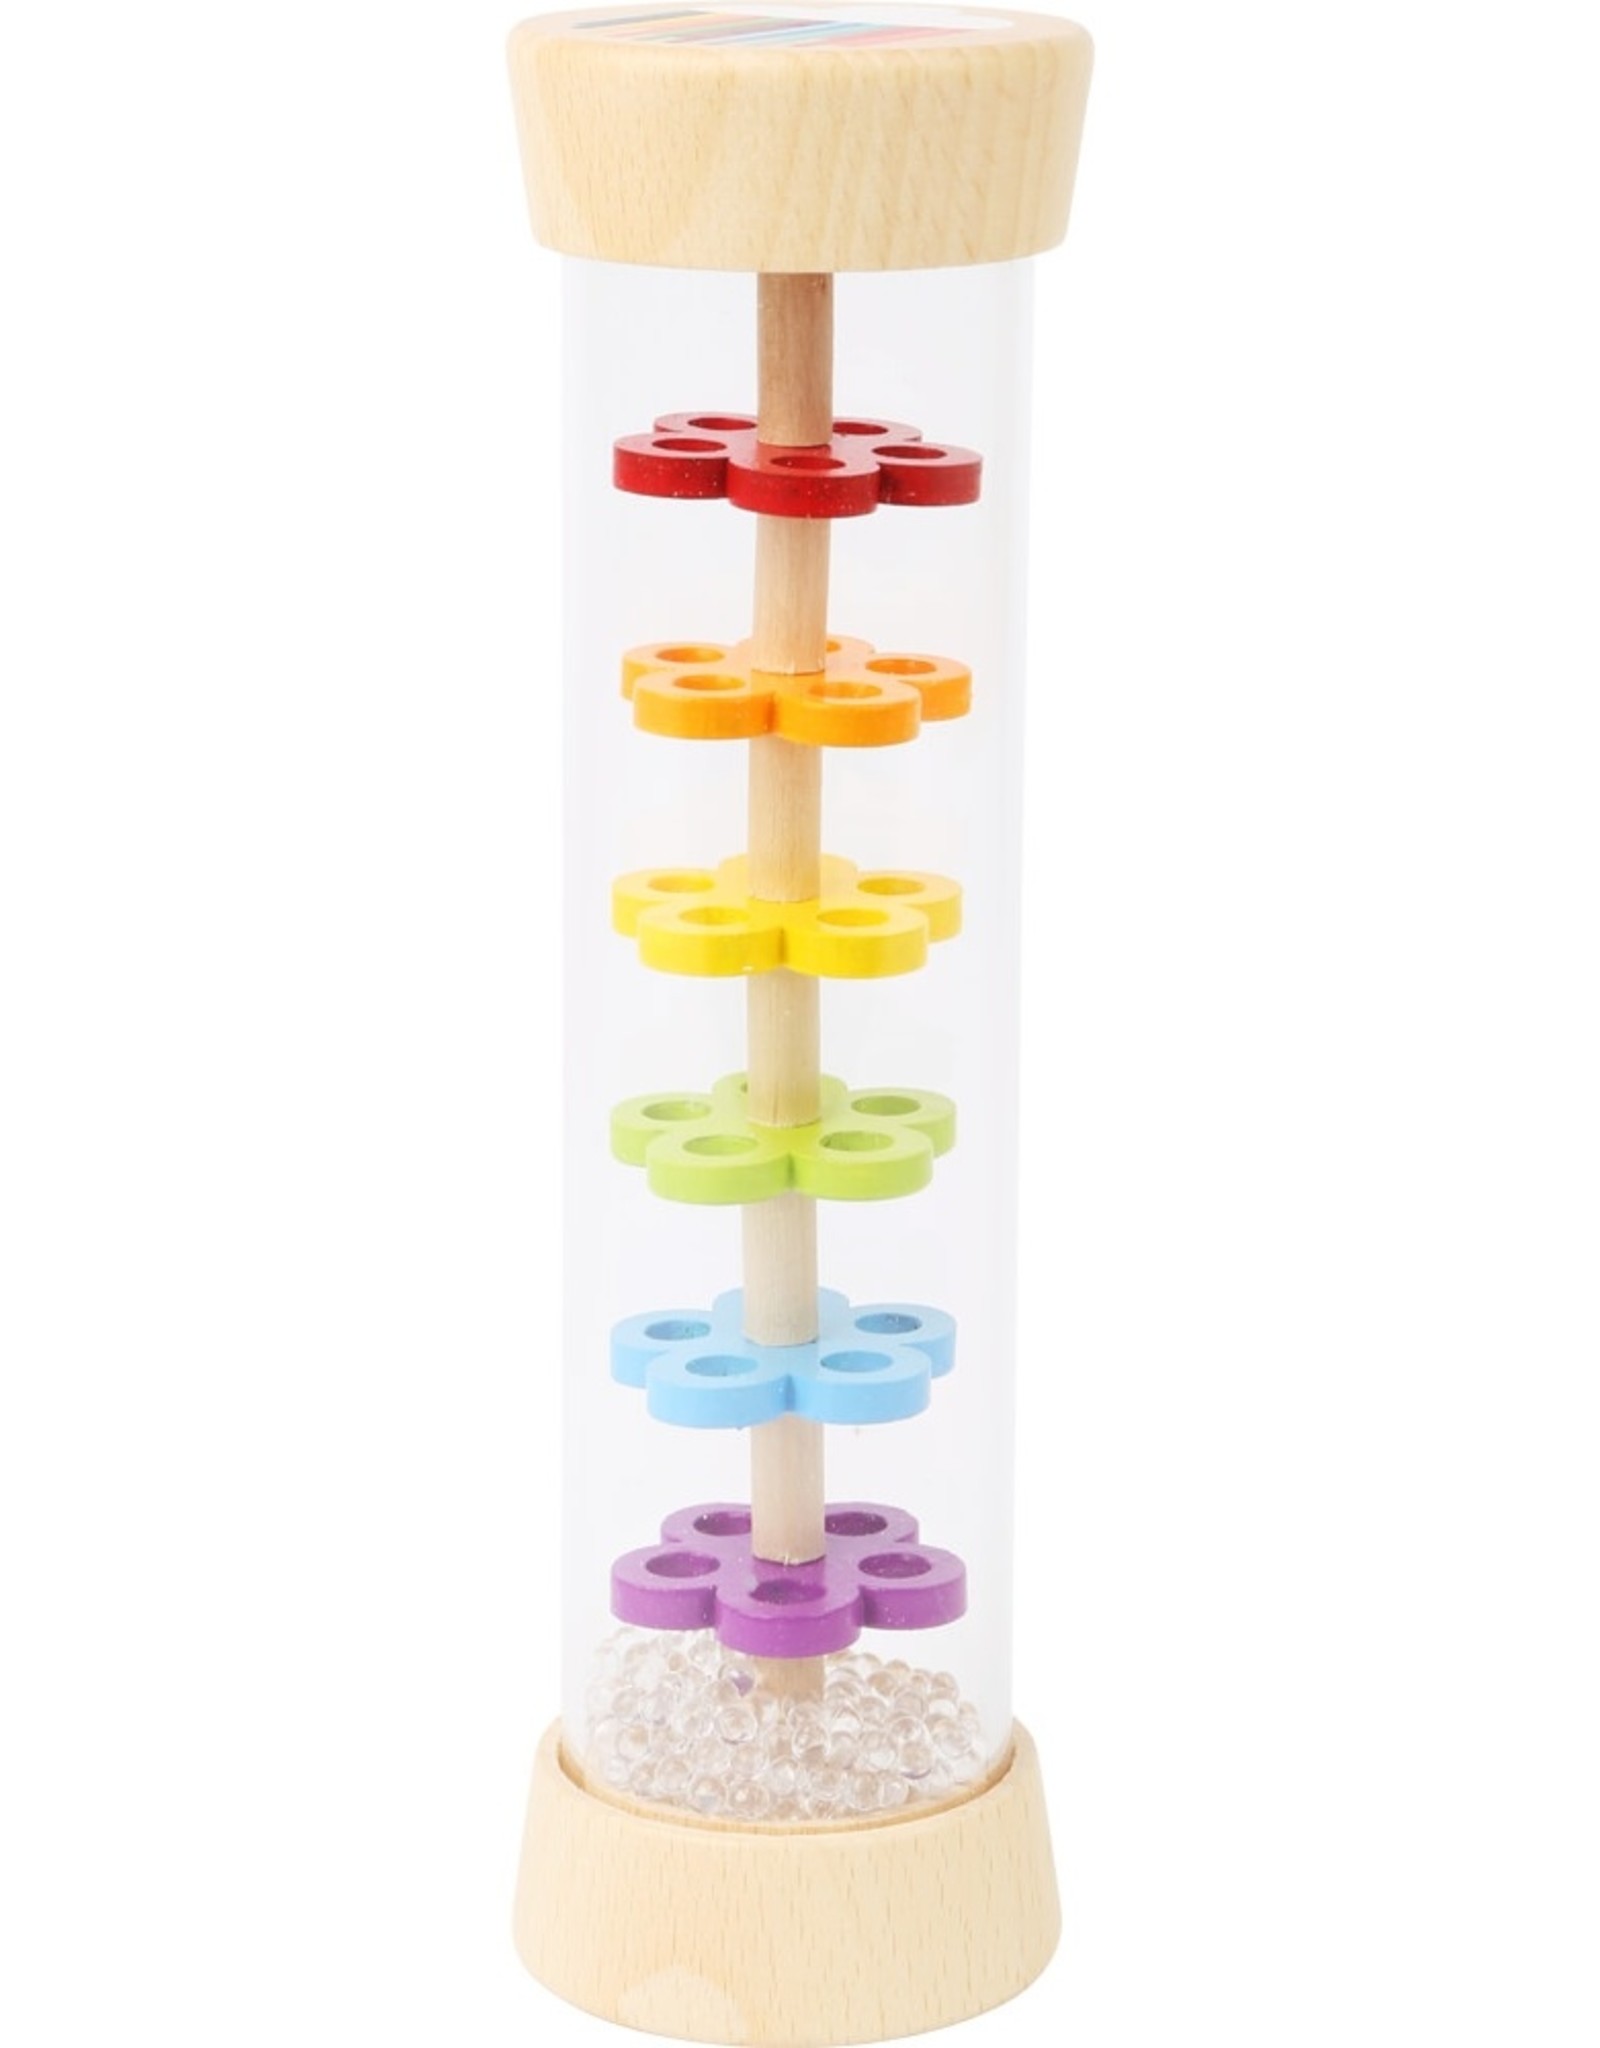 Hauck Toys 11567 Rainbow Rainmaker Toy